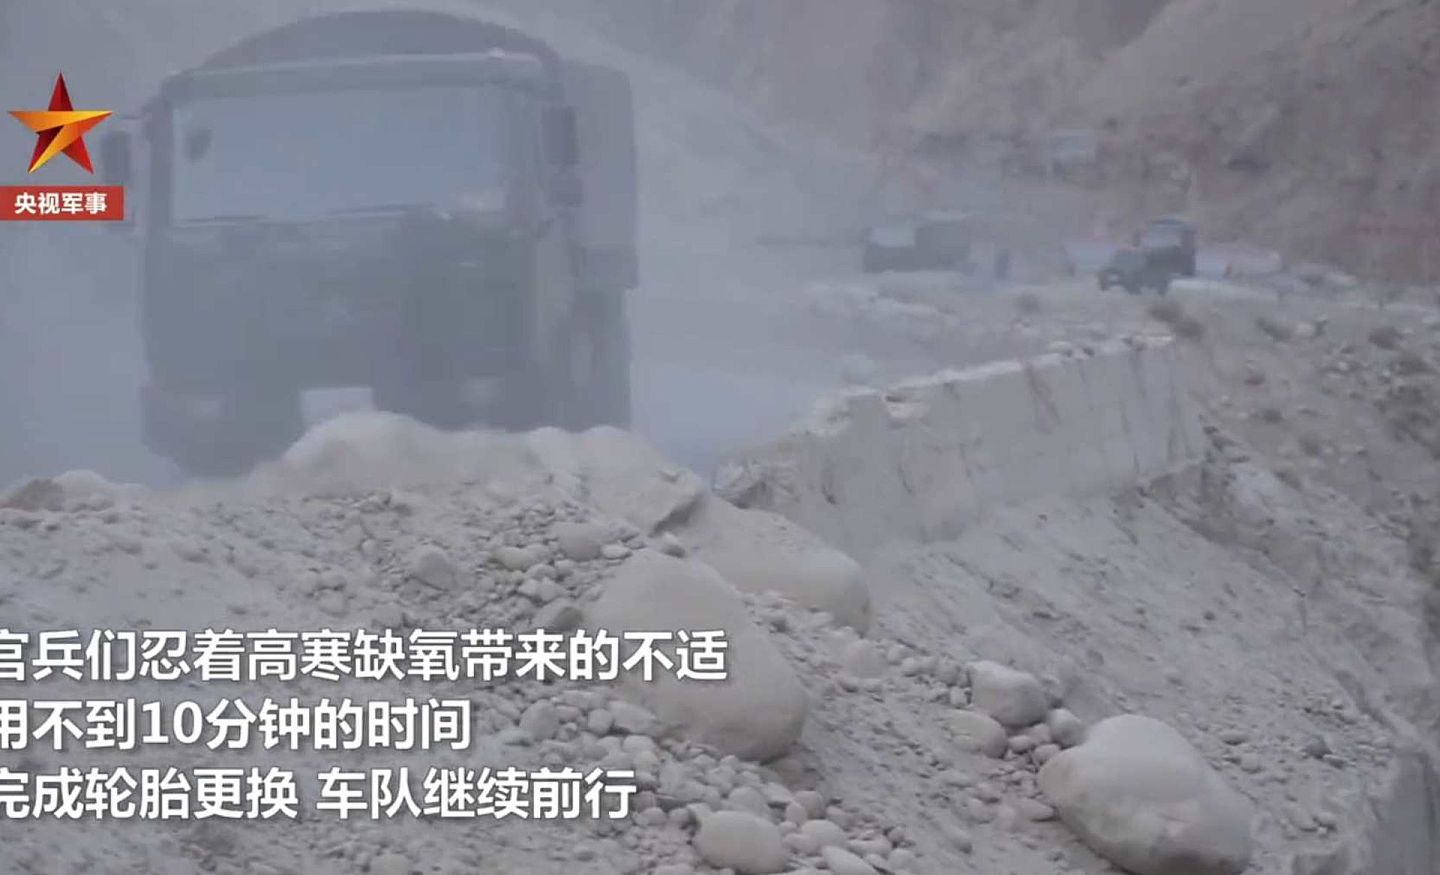 按照中国官方媒体说法，觉巴山右边山体凸出，左边万丈悬崖，随时有可能掉下飞石。（中国央视军事频道视频截图）